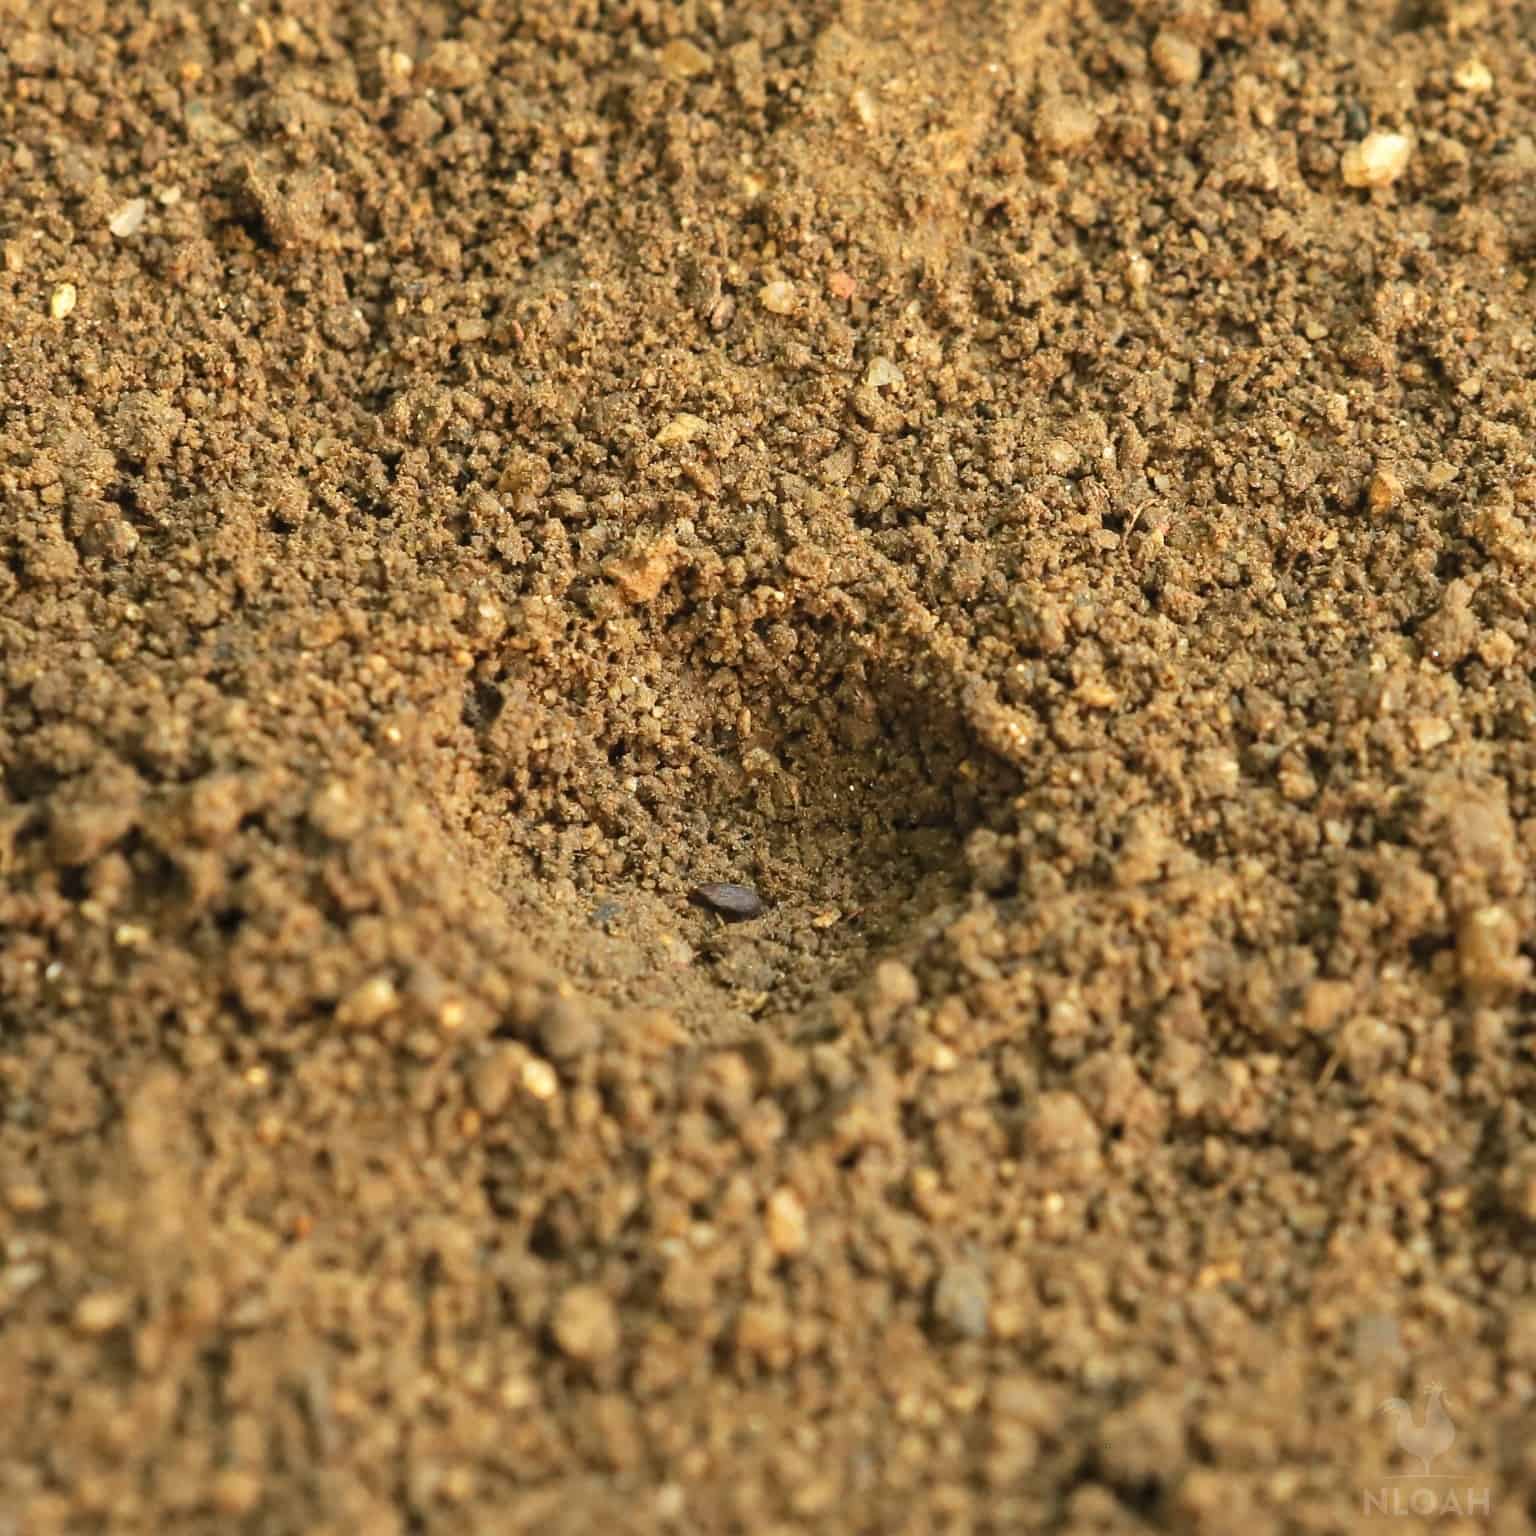 basil seed inside hole in garden soil